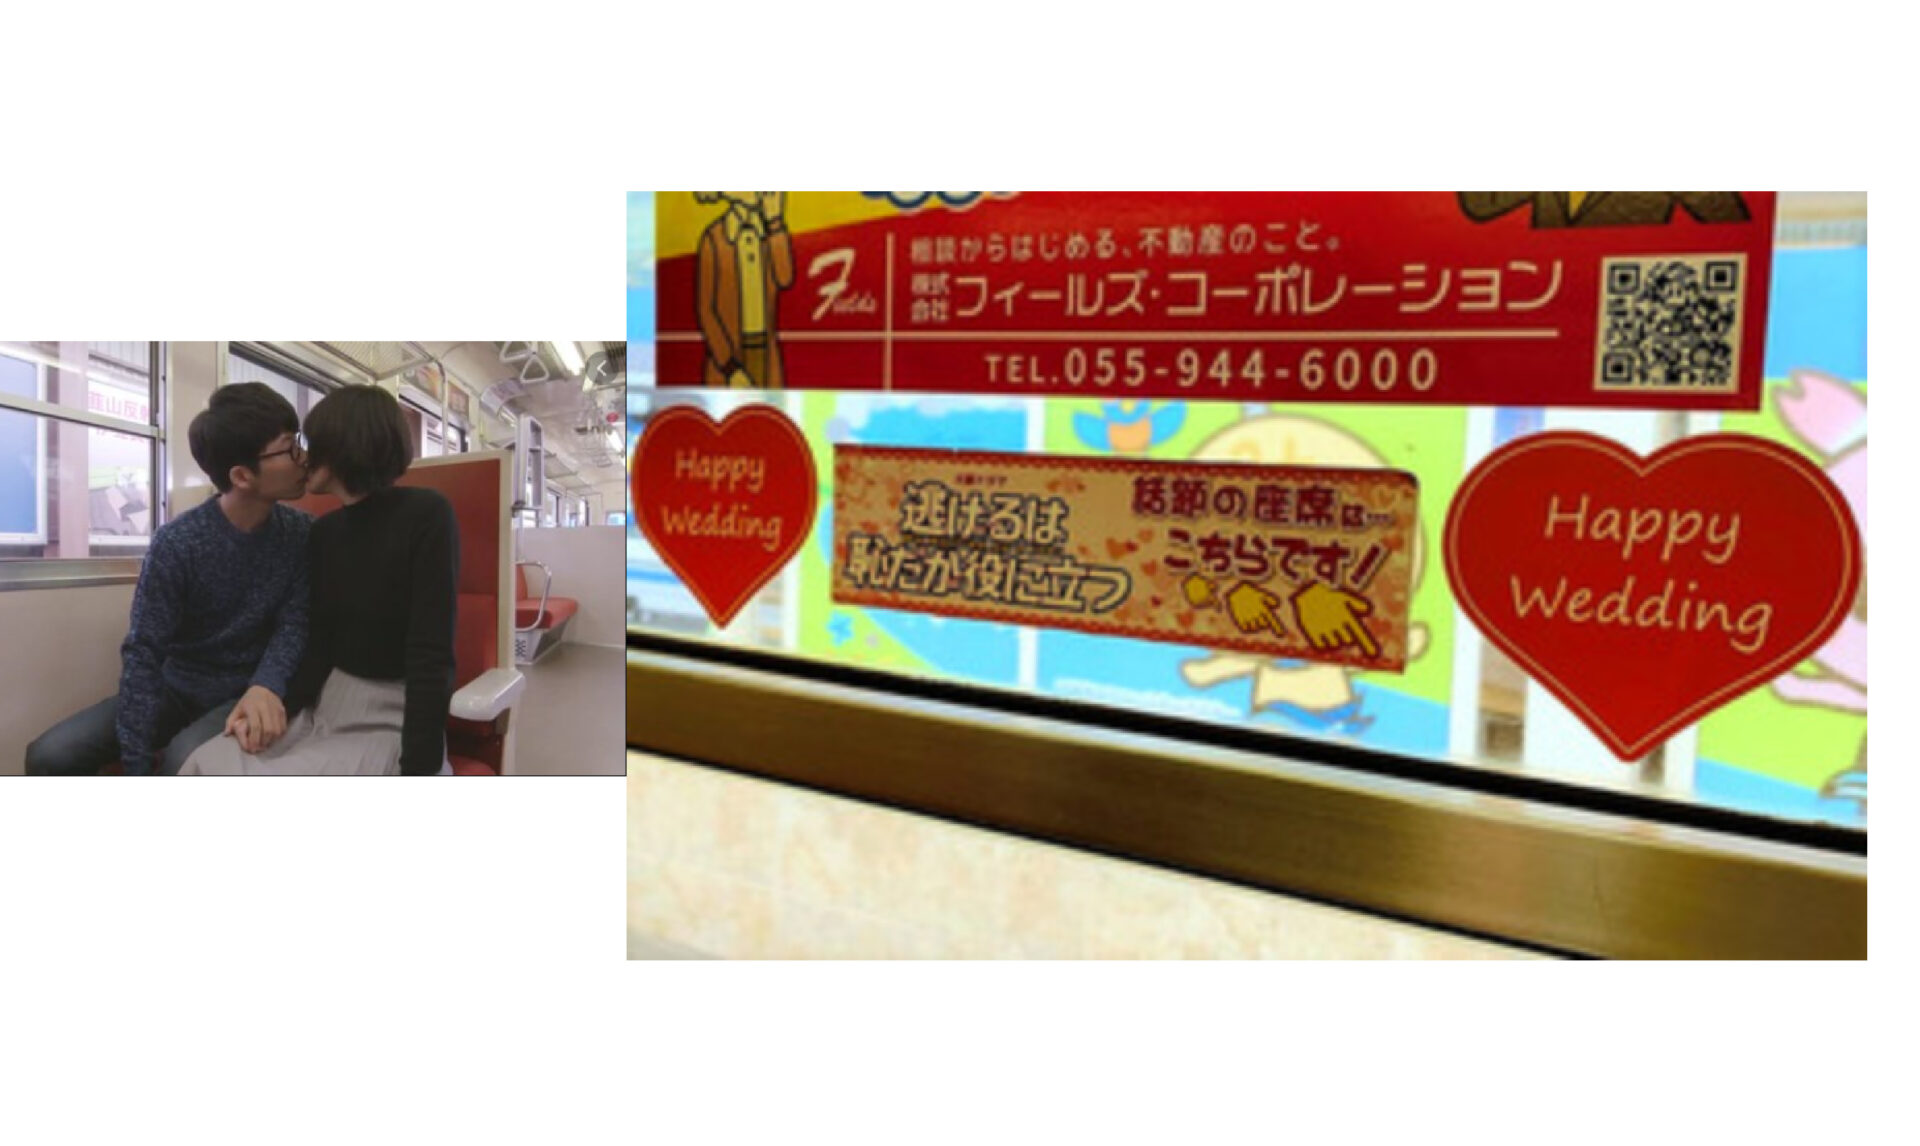 「こちらが星野さん、新垣さん結婚祝福ステッカー」と鉄道会社。そこには不動産会社の広告、なぜ？